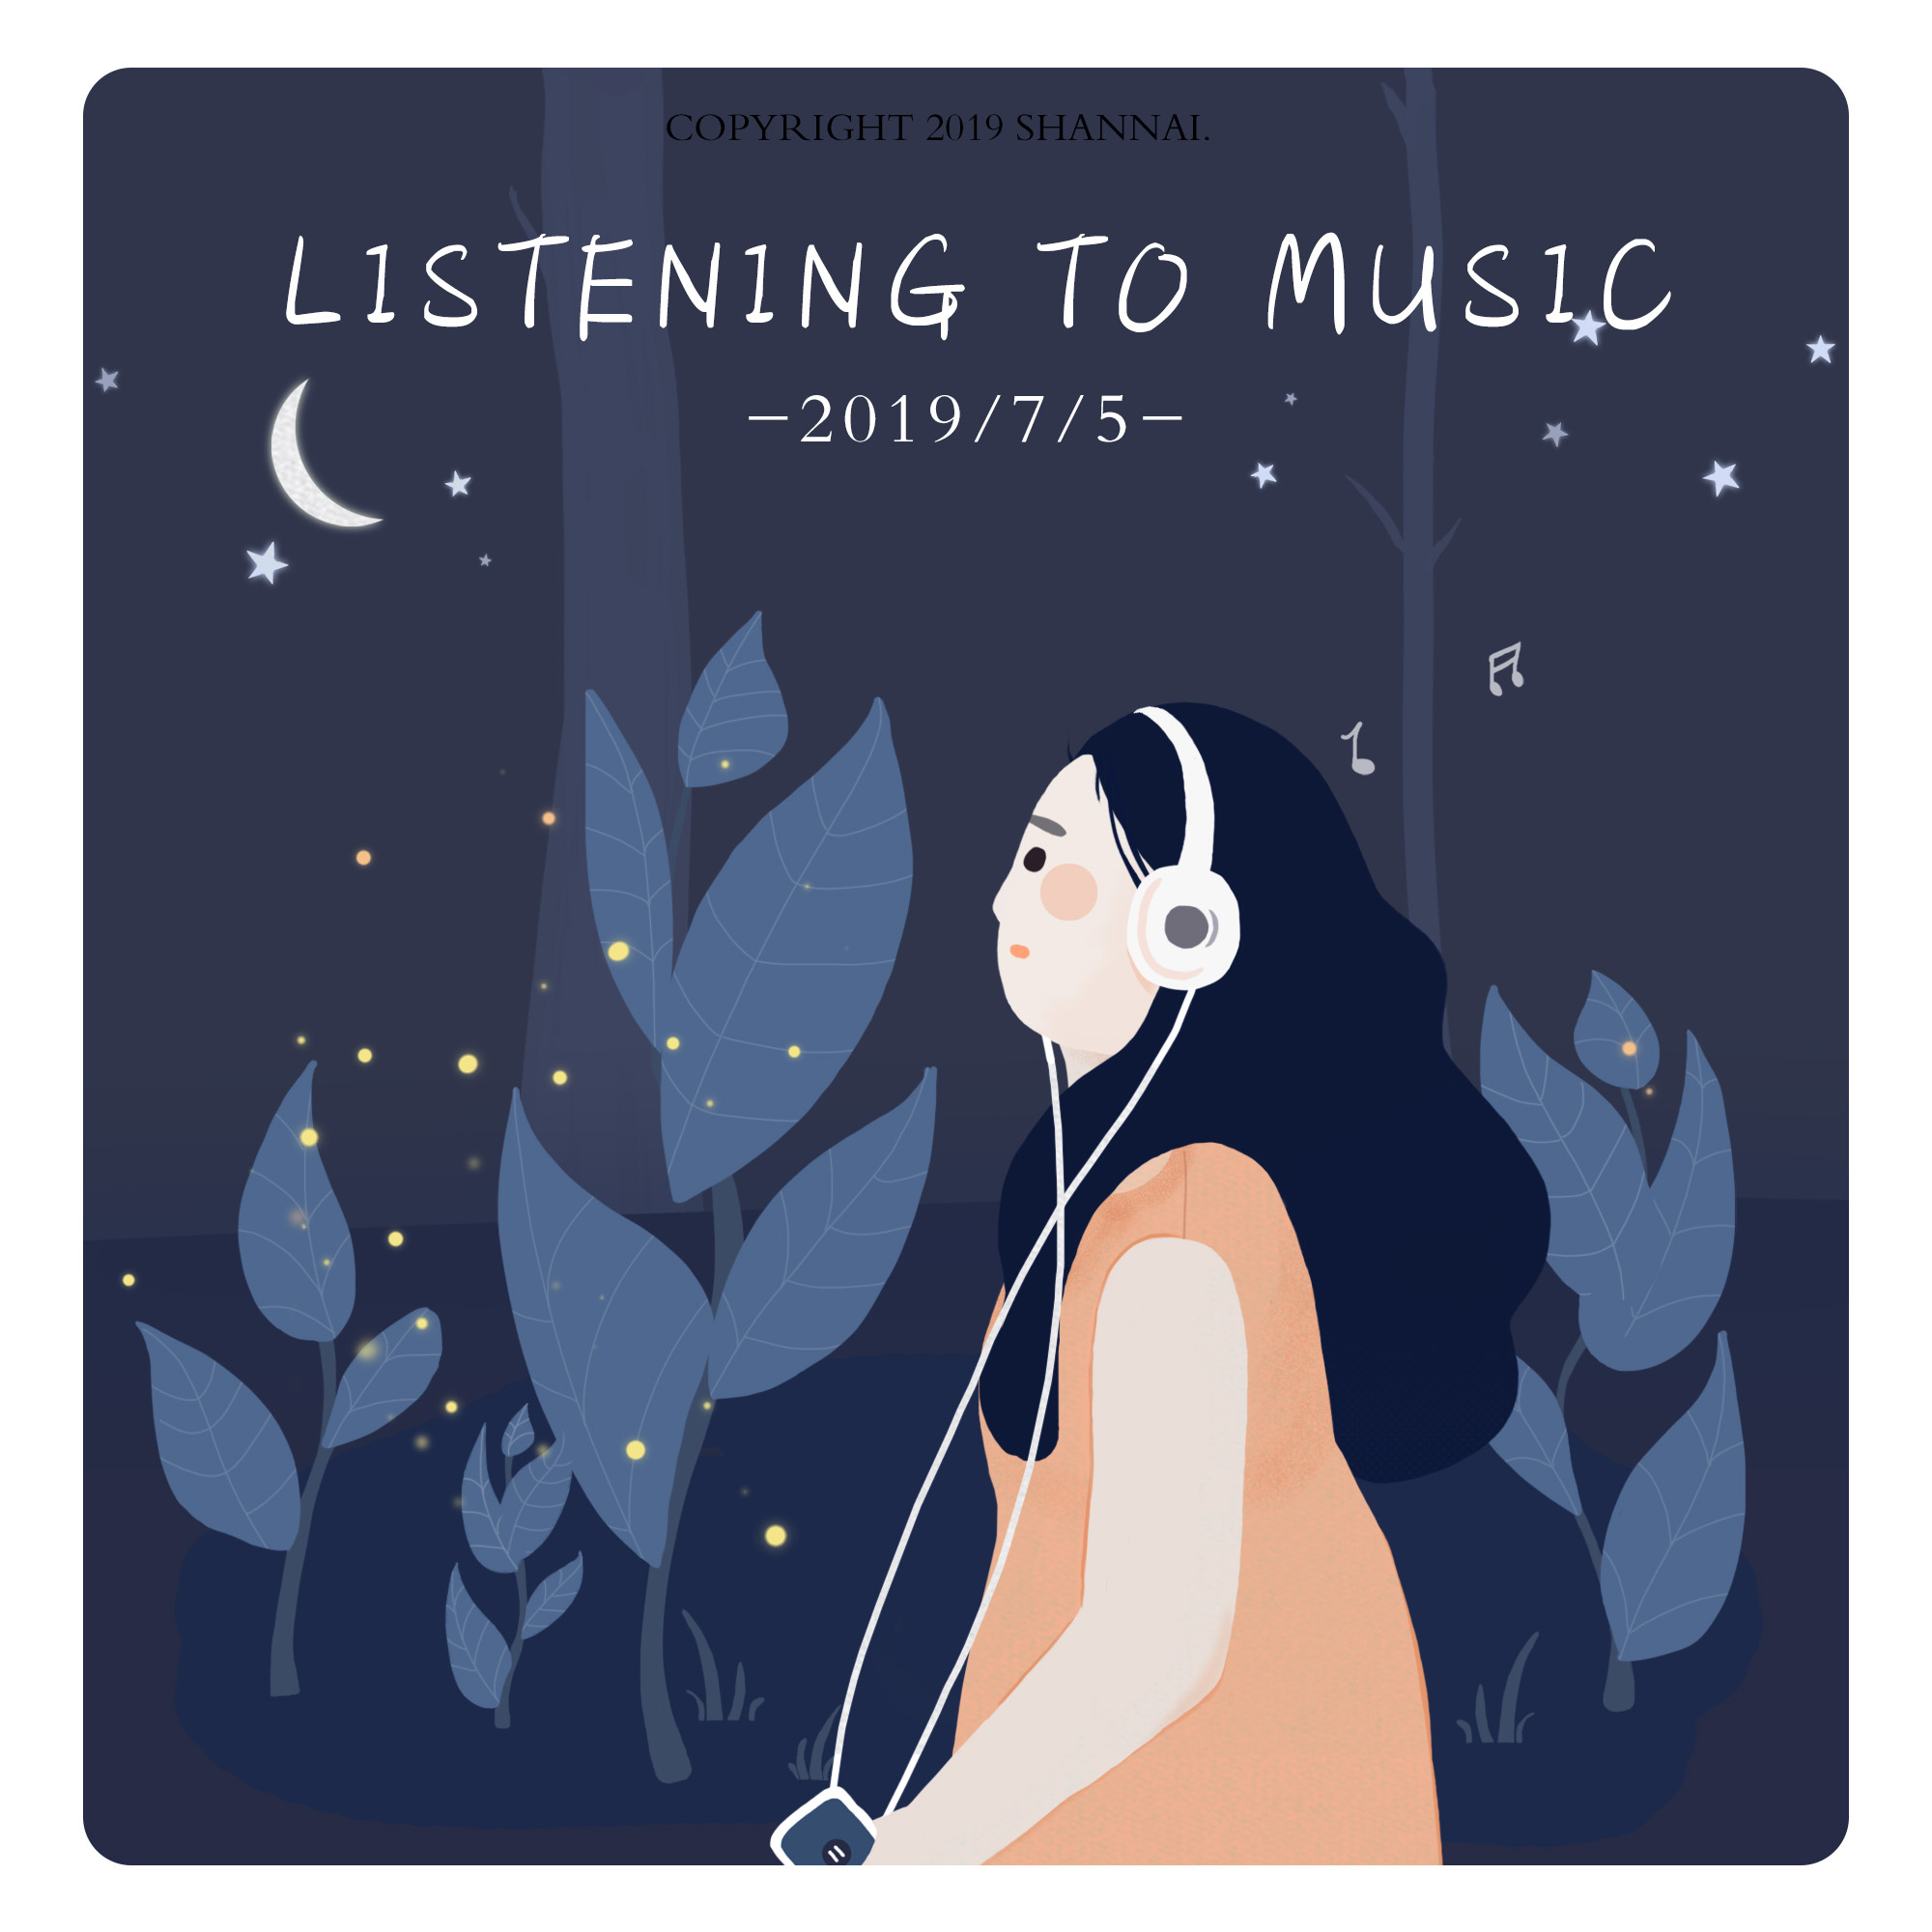 ‎大自然音乐合集:大自然的声音和轻柔的器乐,白噪音、下雨声、水声、森林的声音 - Album by 白噪音 - Apple Music